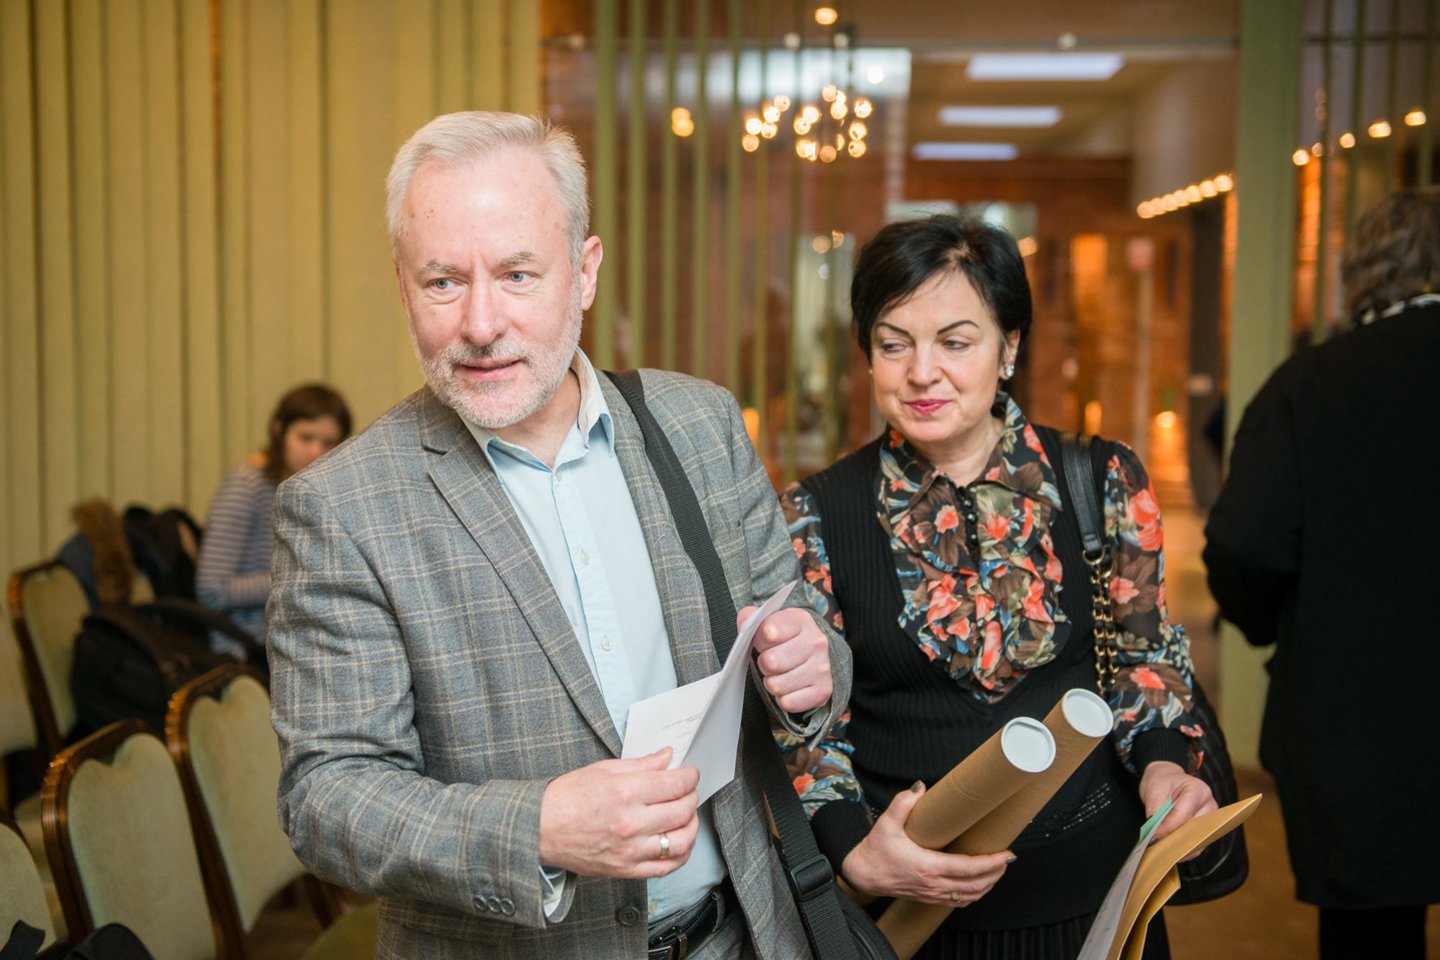  Šeštadienį Vilniuje vyko konservatorių tarybos posėdis, kuriame buvo aptarti savivaldos rinkimų rezultatai.<br> J.Stacevičiaus nuotr.